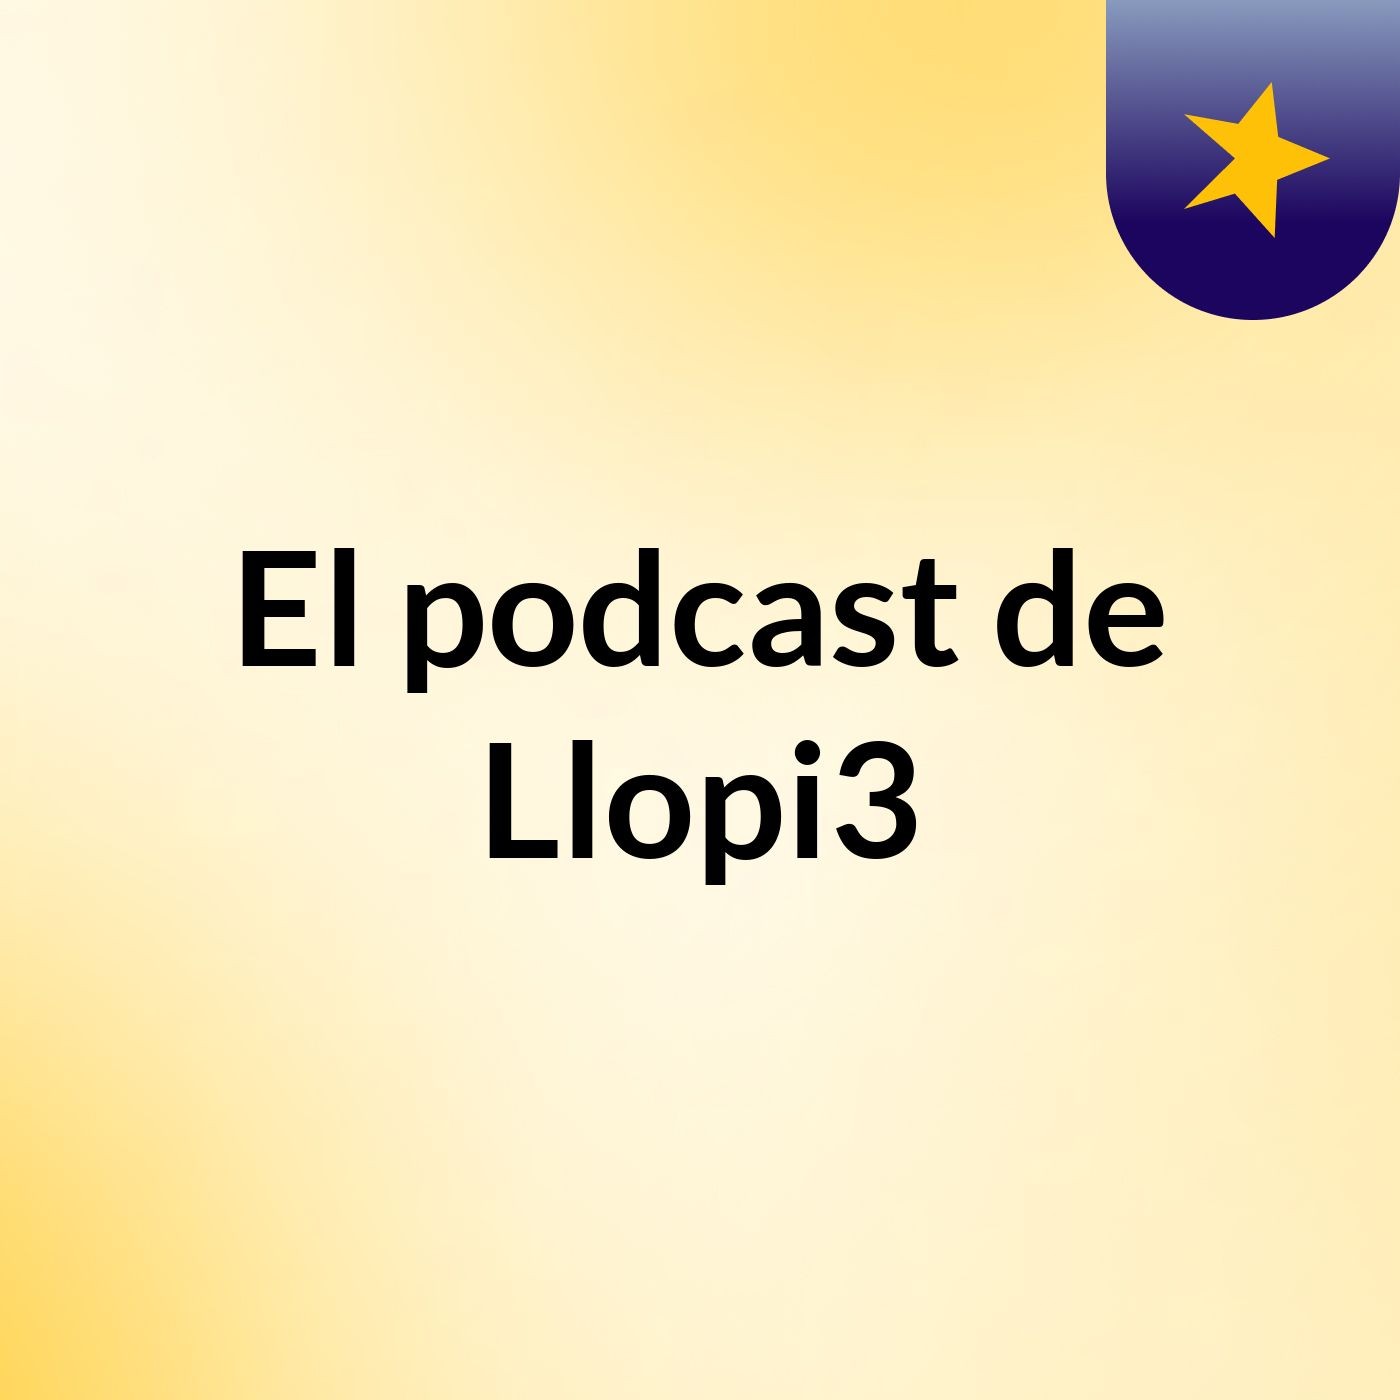 El podcast de Llopi3